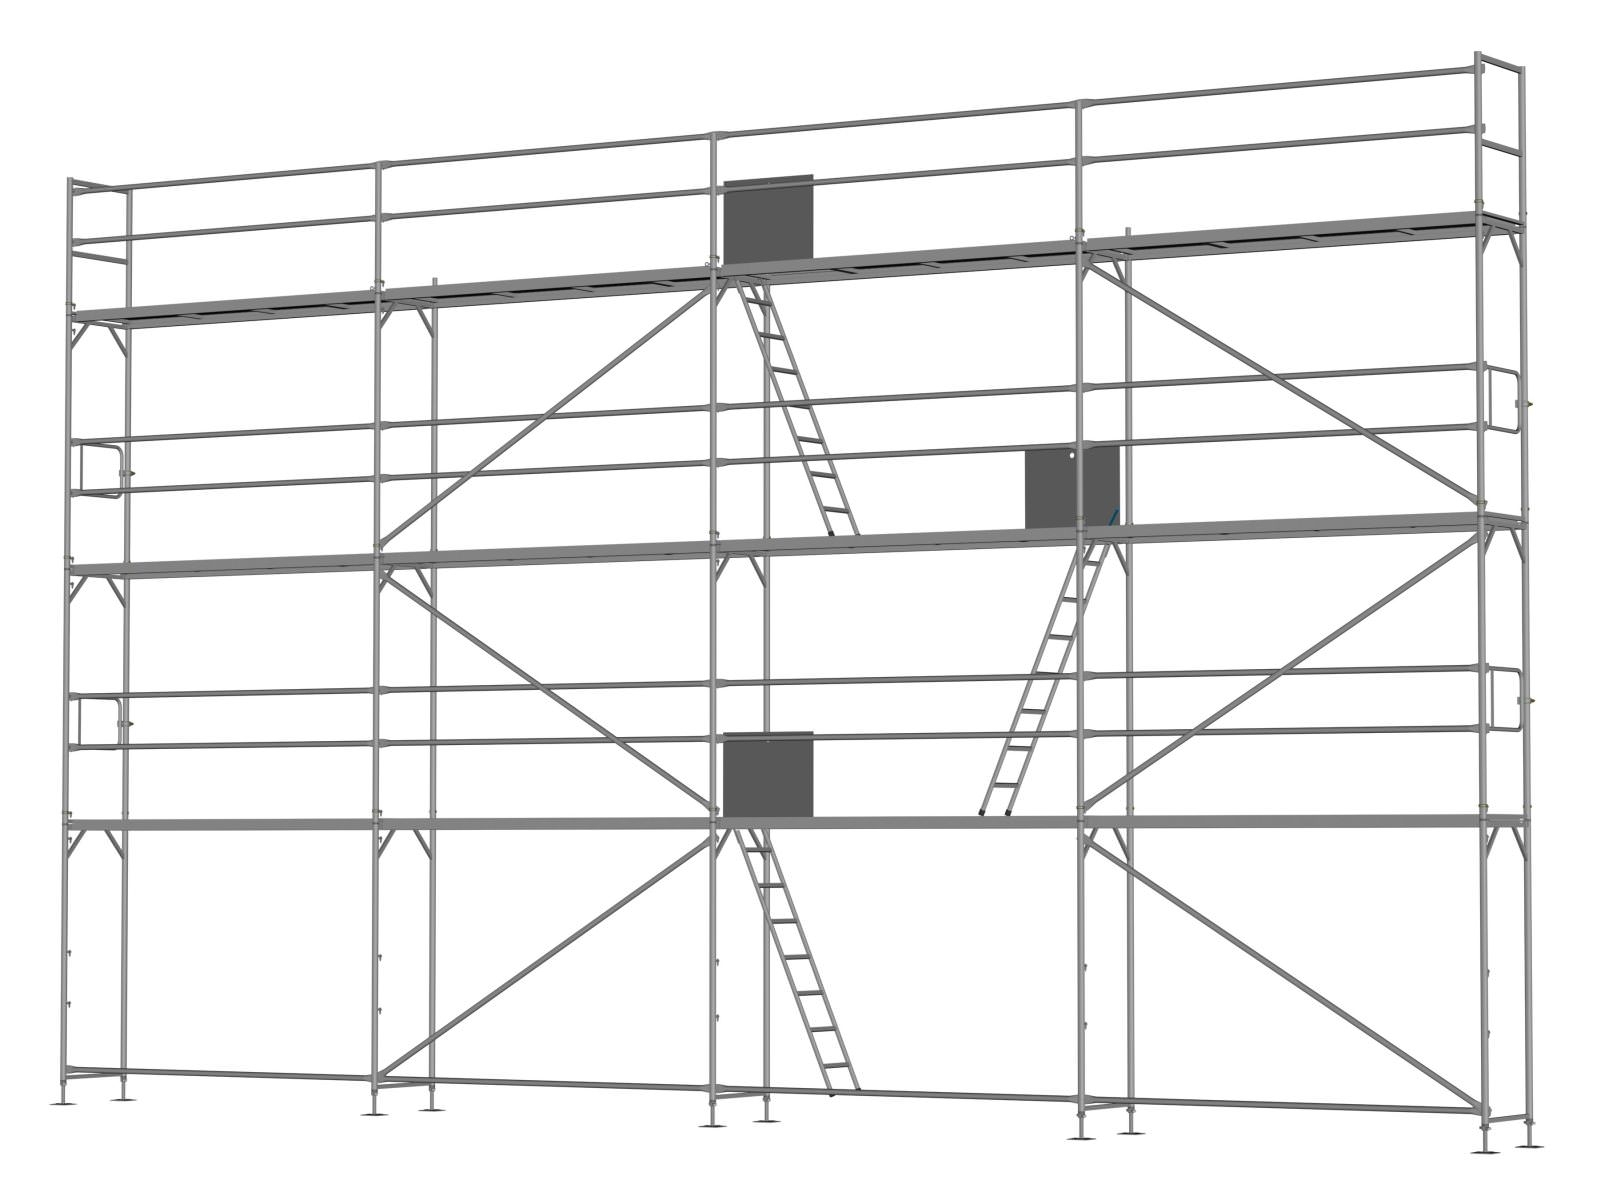 Alu Traufseitengerüst 96 qm - 3,0 m Felder - 12 m lang - 8 m Arbeitshöhe, Basis-Gerüst inkl. Aufstieg & Befestigung